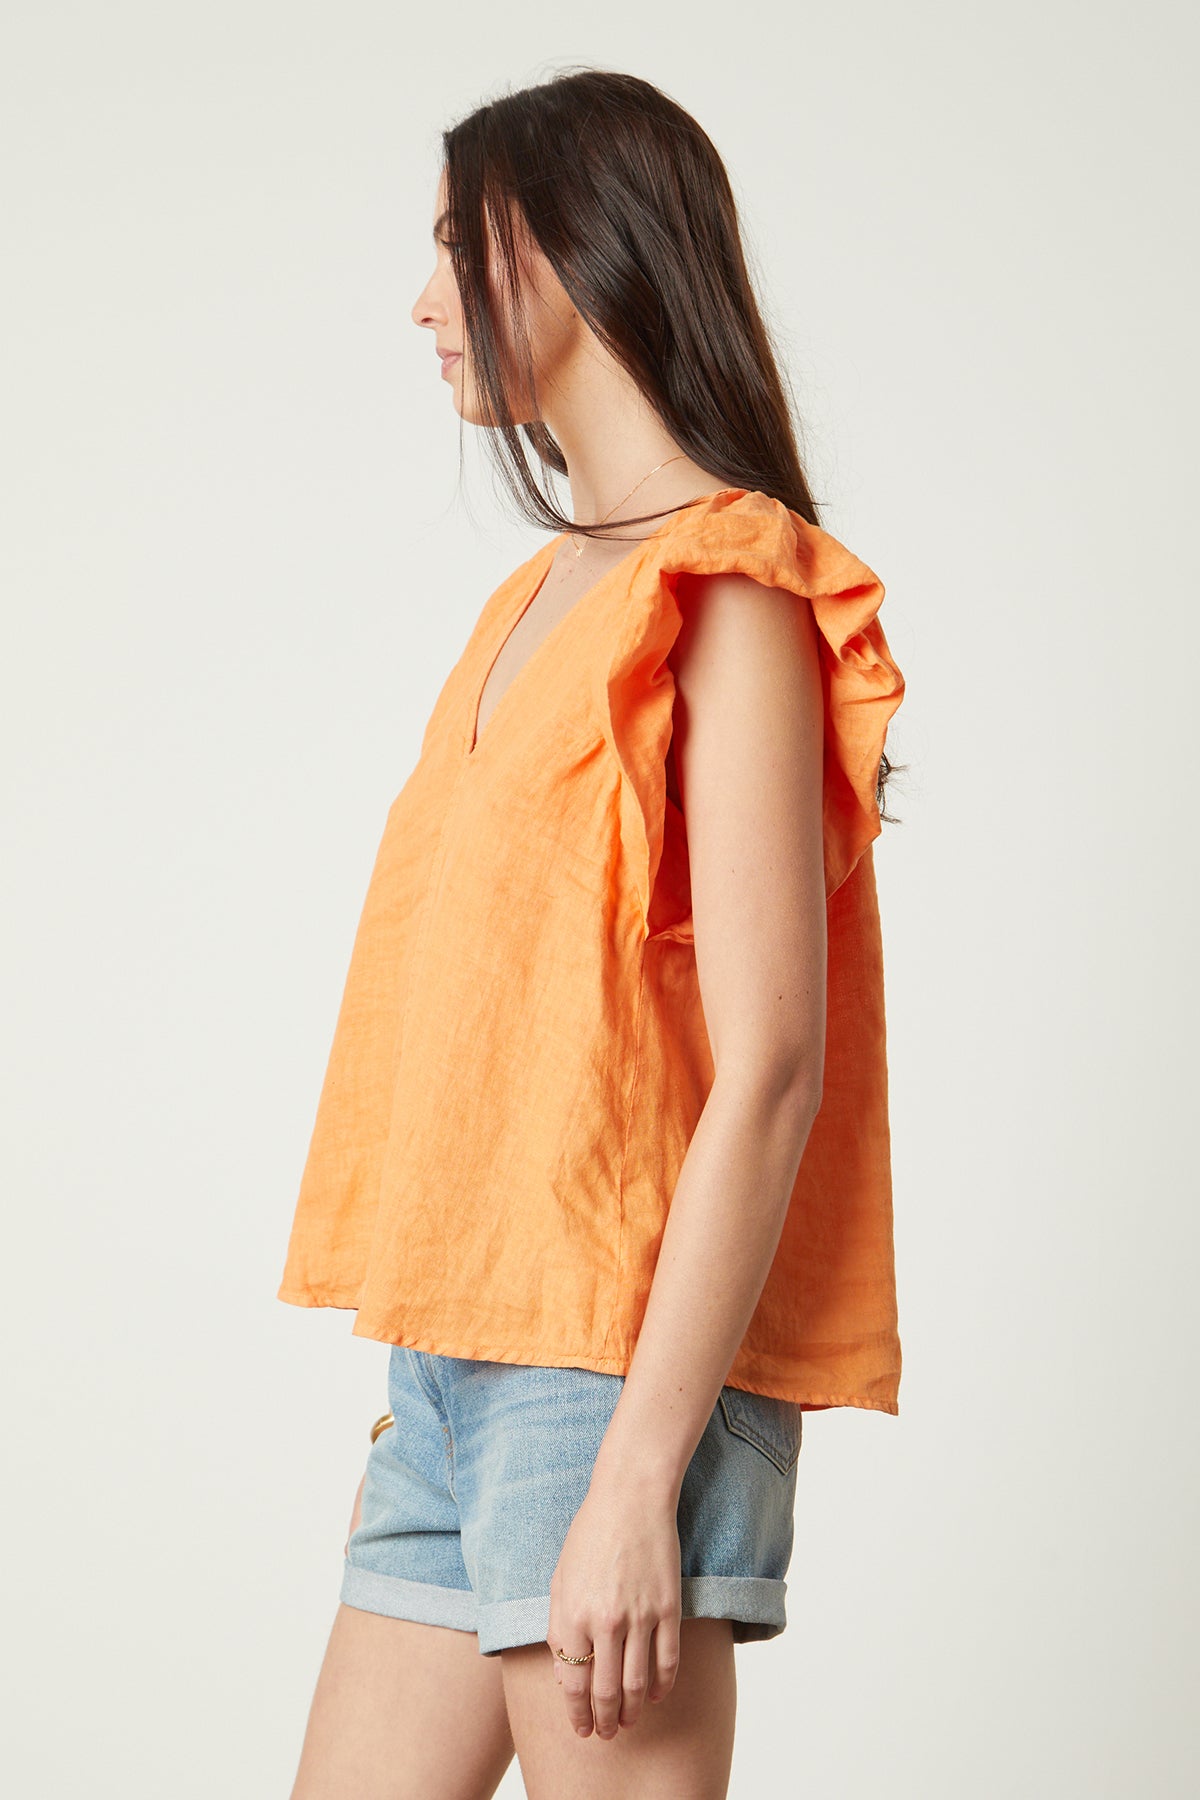 Ava Linen V-Neck Top in orange heat color with blue denim shorts side-26078935613633